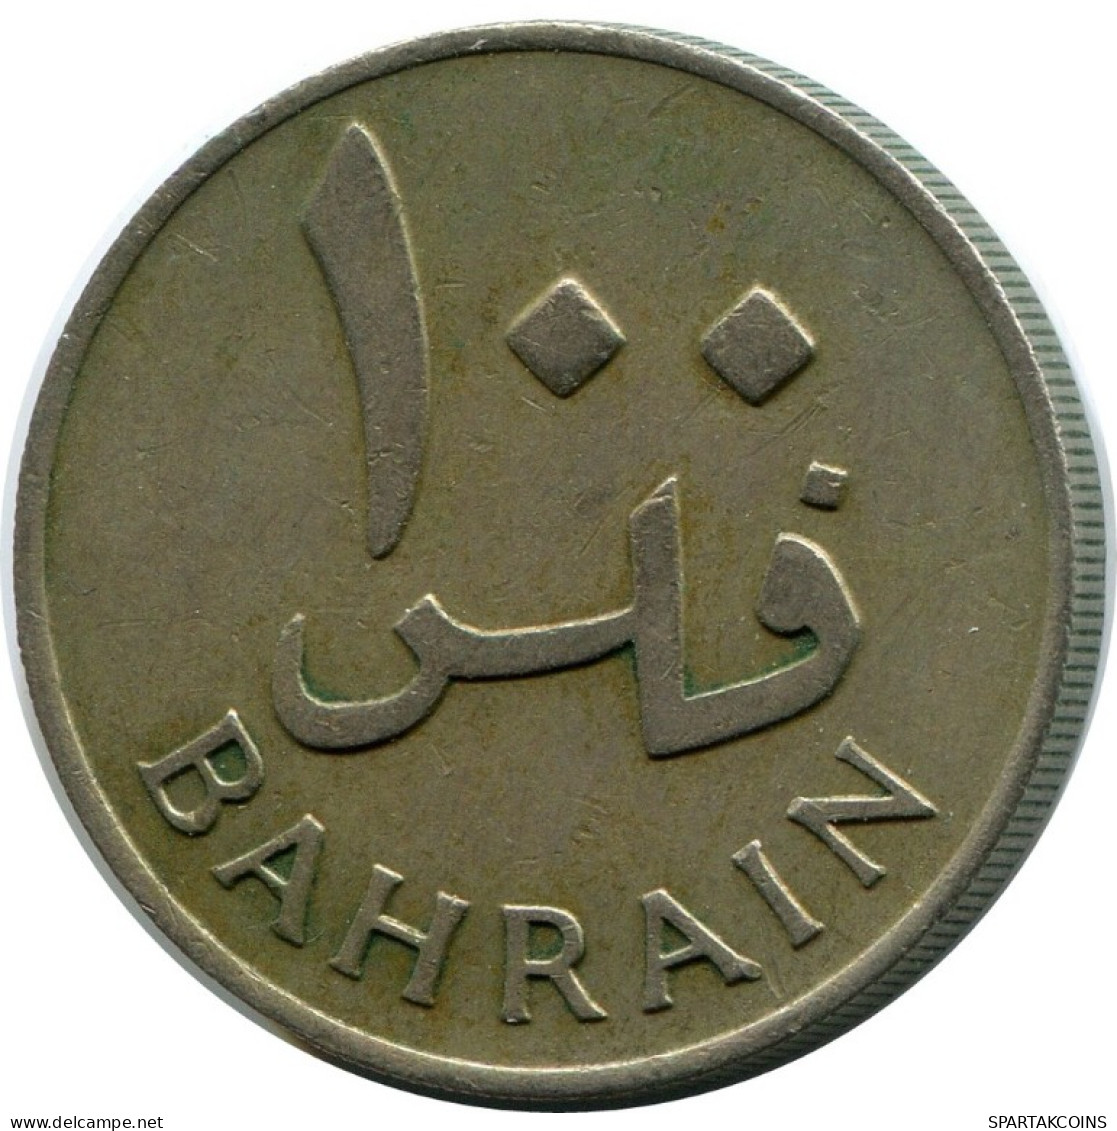 100 FILS 1965 BAHRAIN Islamic Coin #AK177.U.A - Bahrein